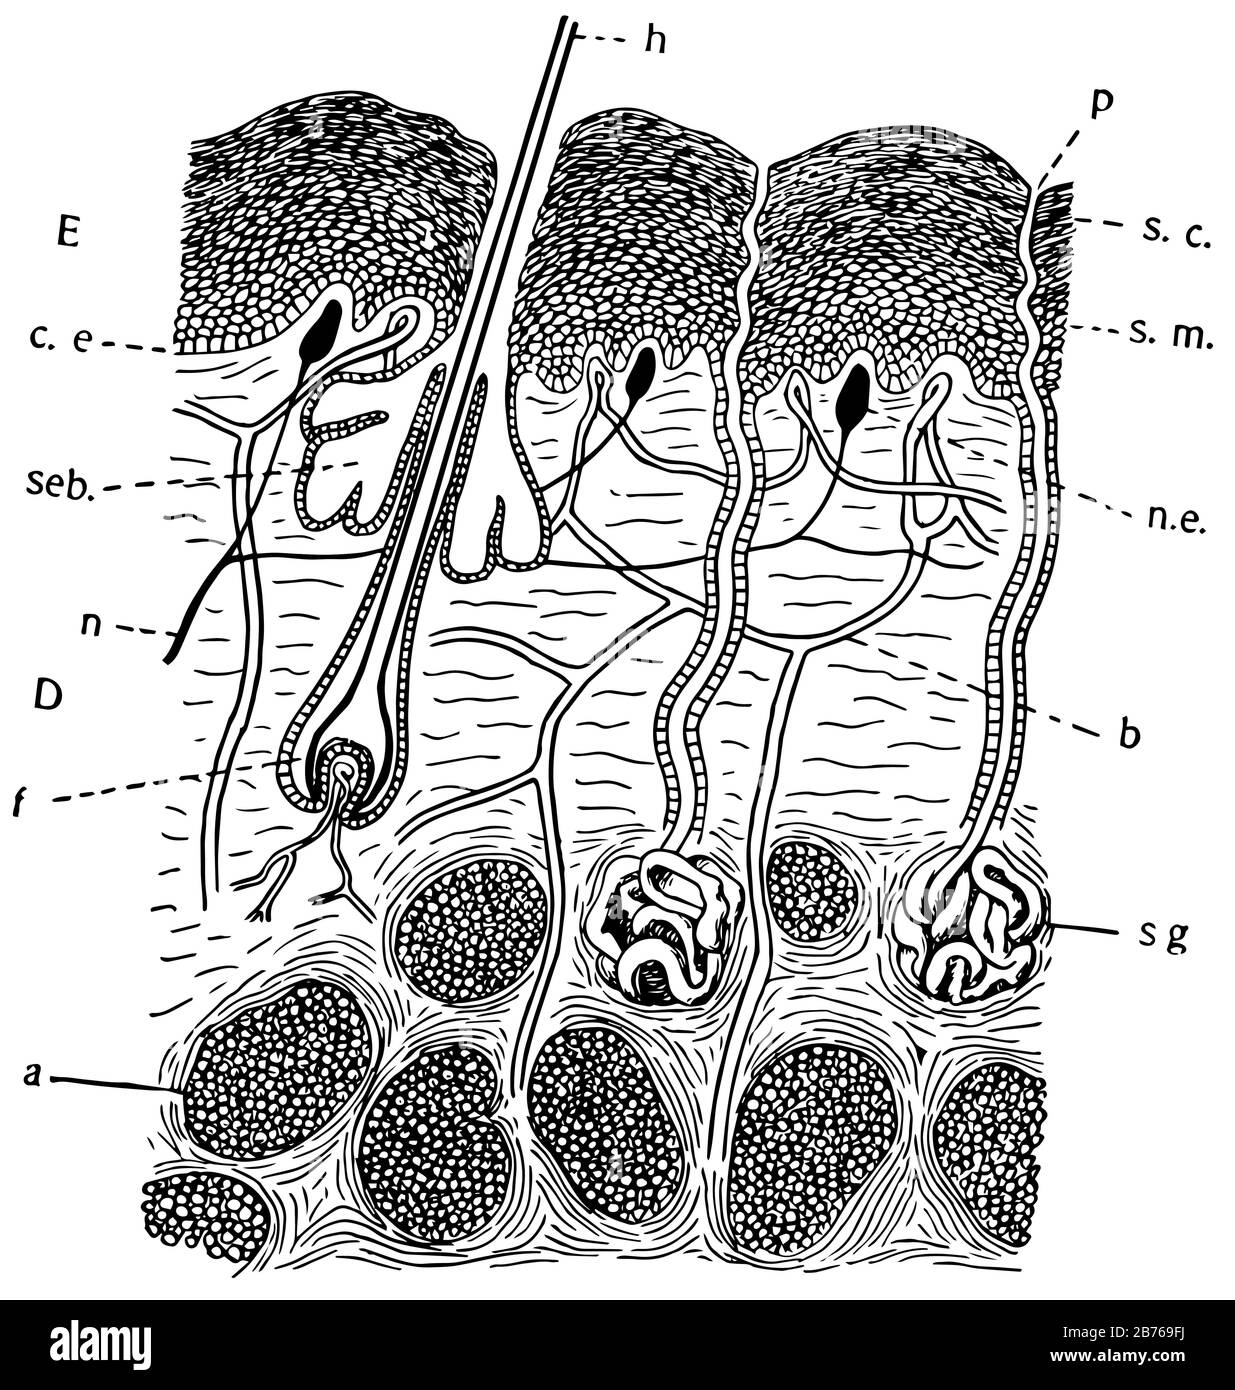 Dies ist ein Diagramm der Haut von Säugetieren, das den vielschichtigen Zustand zusammen mit Auswuchs und Einwachsen, Vintage-Zeichnung oder Überführung zeigt Stock Vektor